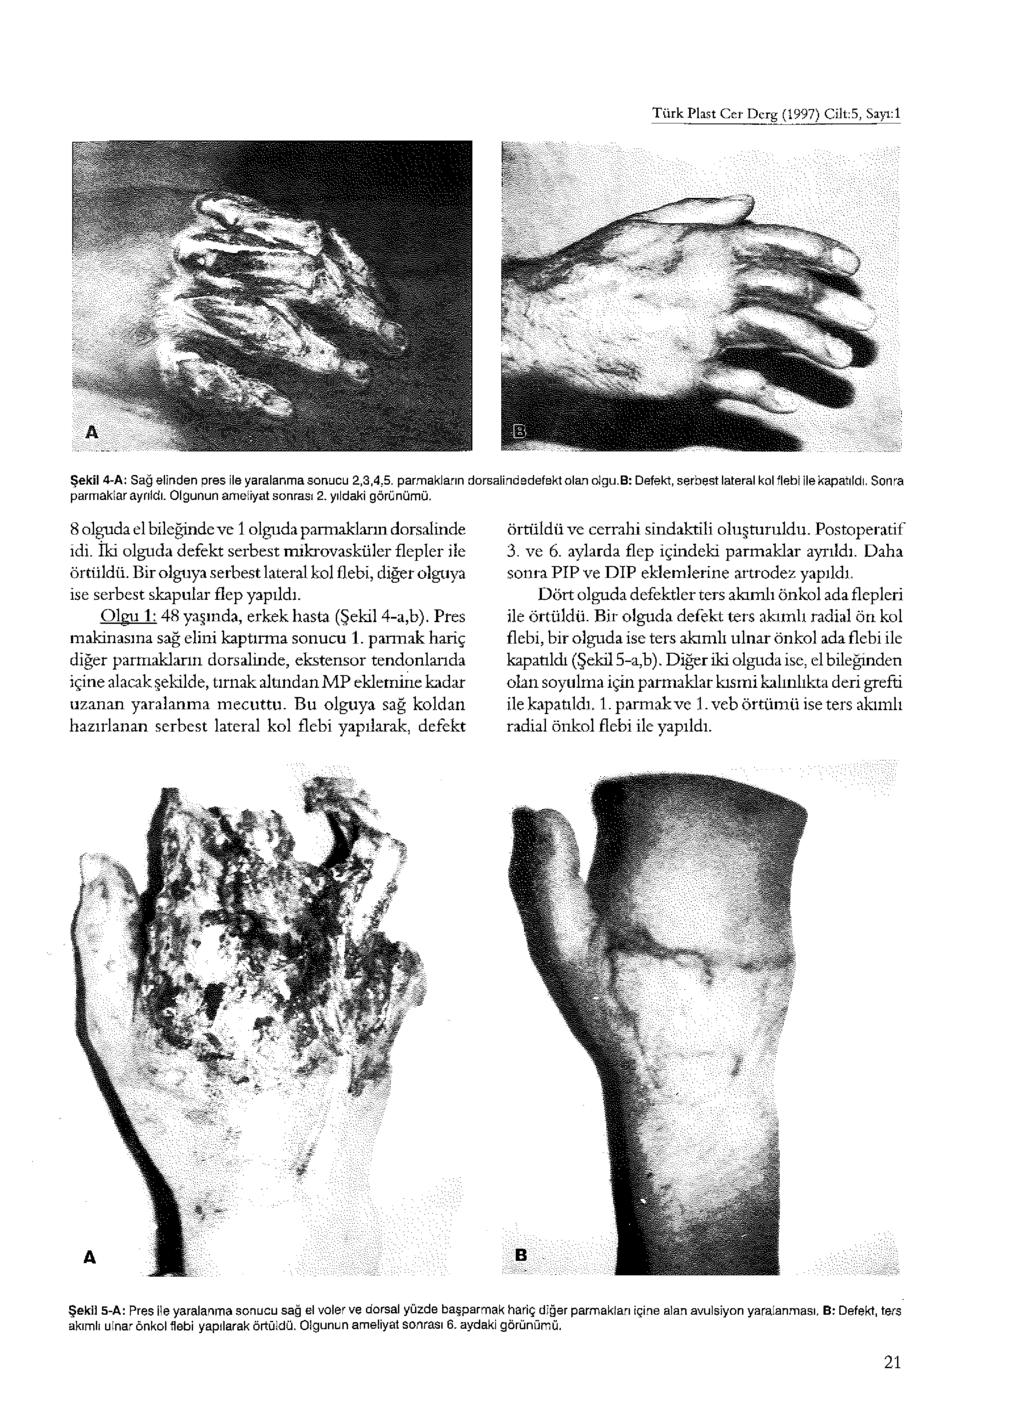 Türk Plast Cer Derg (997) Cîlt:5, Sayı:l Şekil 4-A: Sağ elinden pres ile yaralanma sonucu 2,3,4,5. parmakların dorsalindedefekt olan olgu.b: Defekt, serbest lateral kol flebi İle kapatıldı.